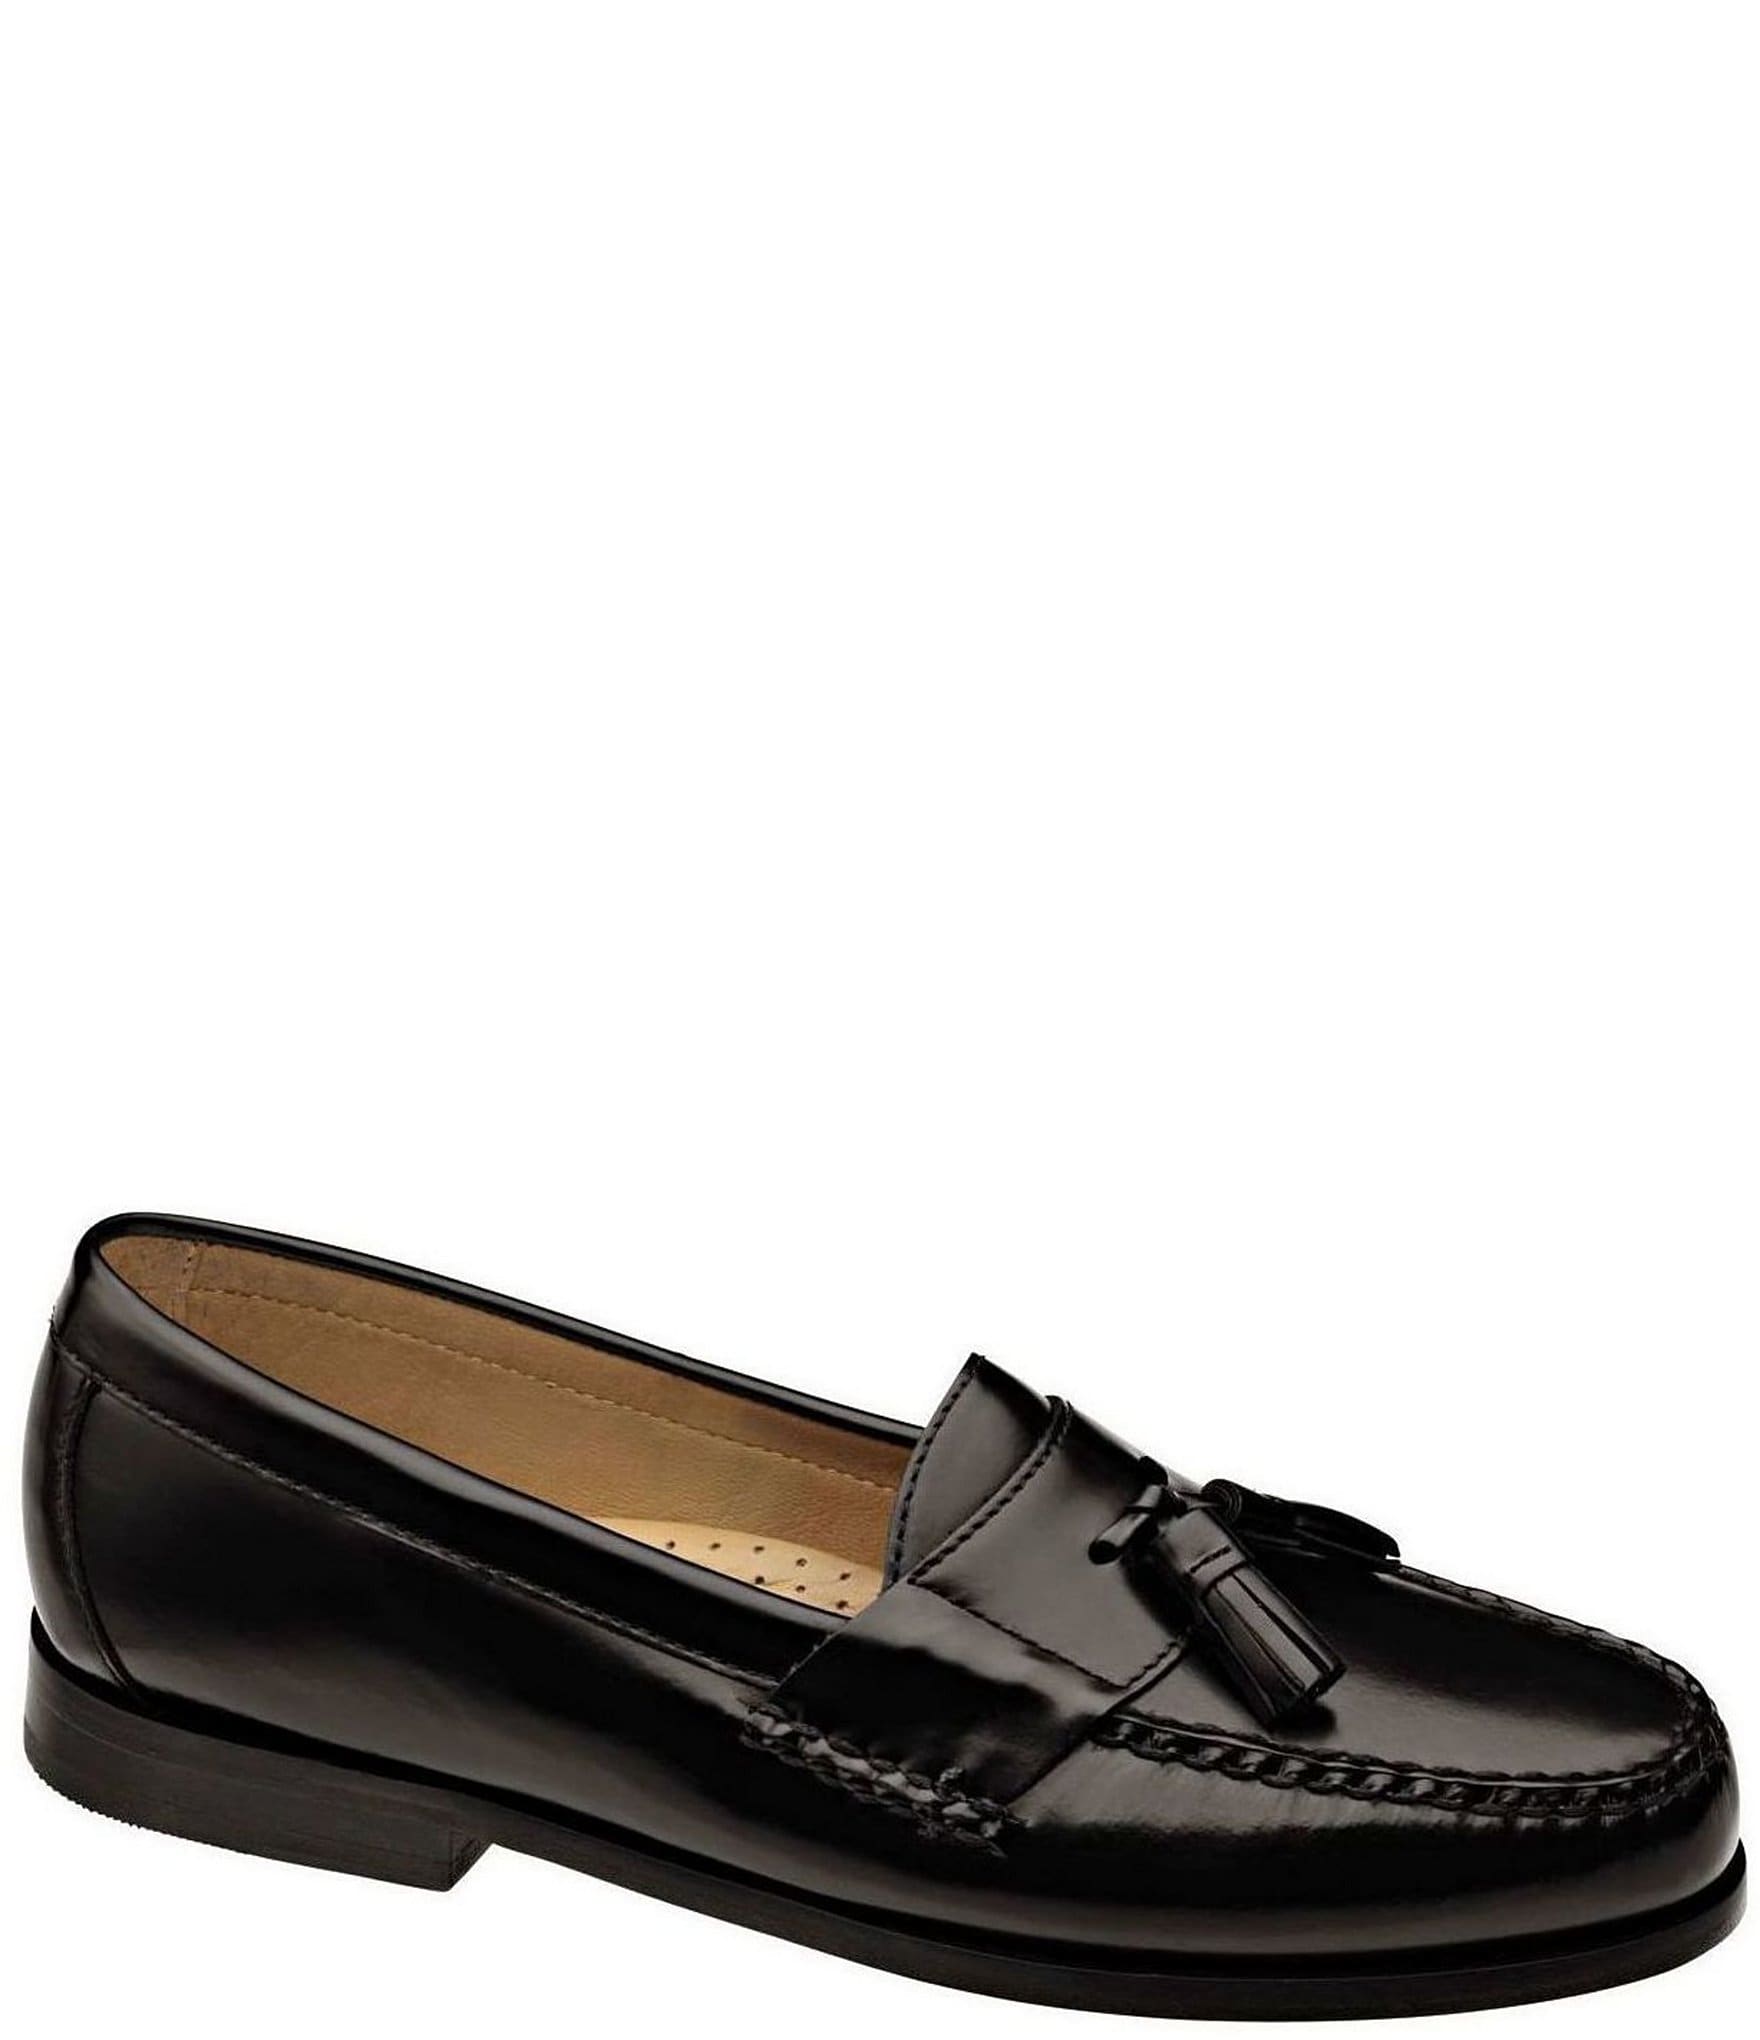 mens black dress loafers